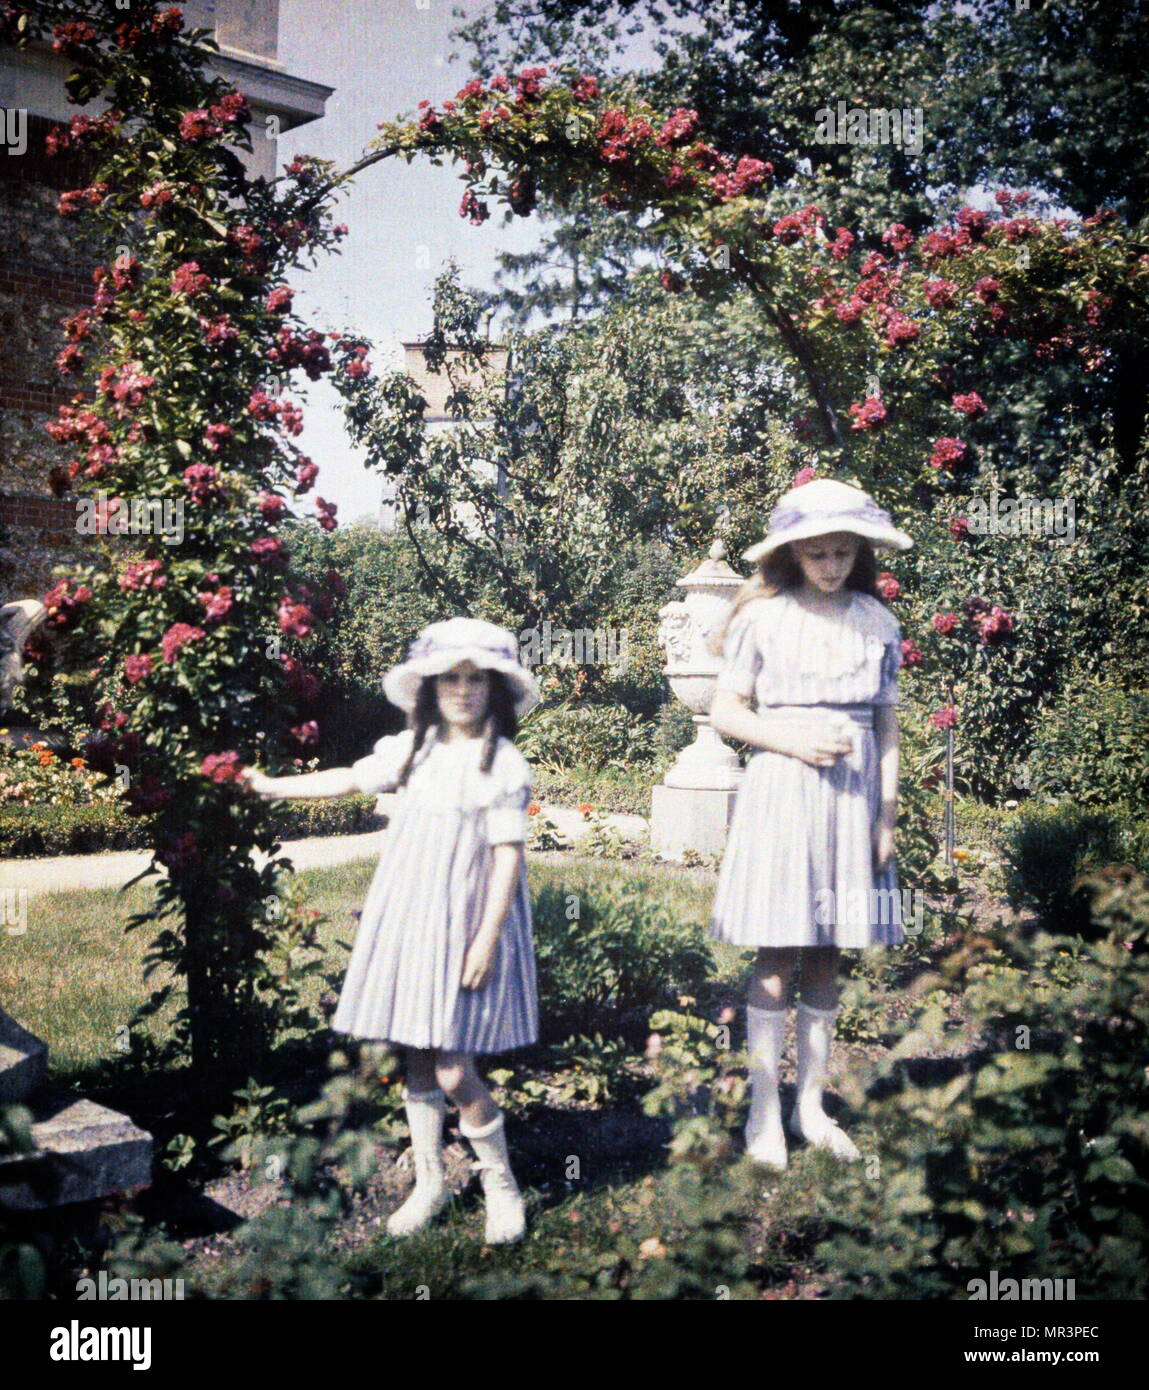 Deux filles dans un jardin, 1908. photographié en lumière Autochrome, un début de la photographie en couleurs. Breveté en 1903 par les frères Lumière en France et commercialisée pour la première fois en 1907, il a été le principal processus de la photographie couleur en usage avant l'arrivée de couleurs soustractives film dans le milieu des années 1930 Banque D'Images